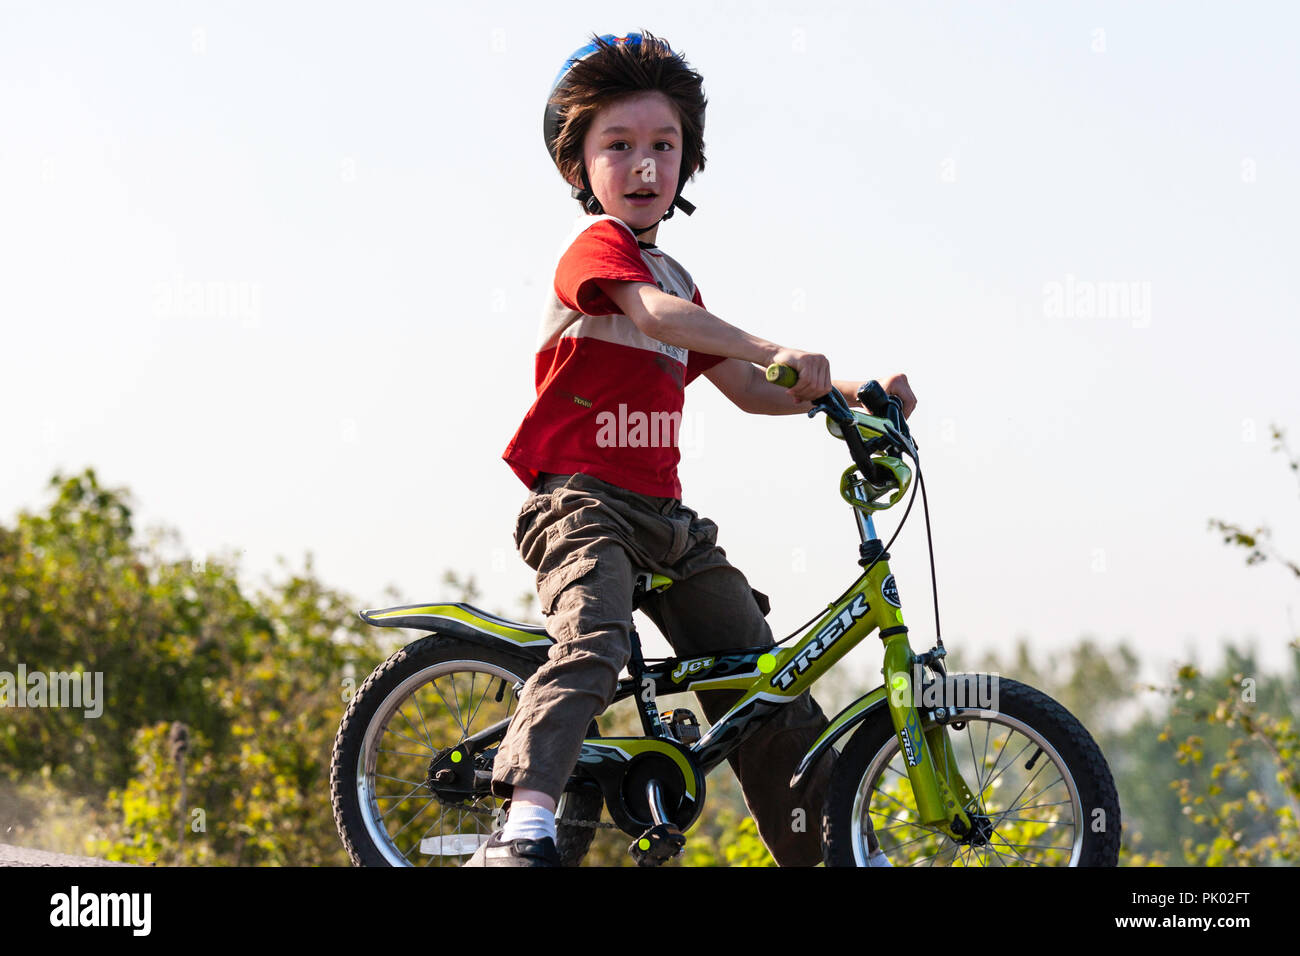 Kaukasier Kind, Junge, 7-8 Jahre alt, trägt blaue Sturzhelm und an das  kleine Kinder Fahrrad, Gesicht drehte sich um Zuschauer zu suchen.  Glücklichen Ausdruck Stockfotografie - Alamy